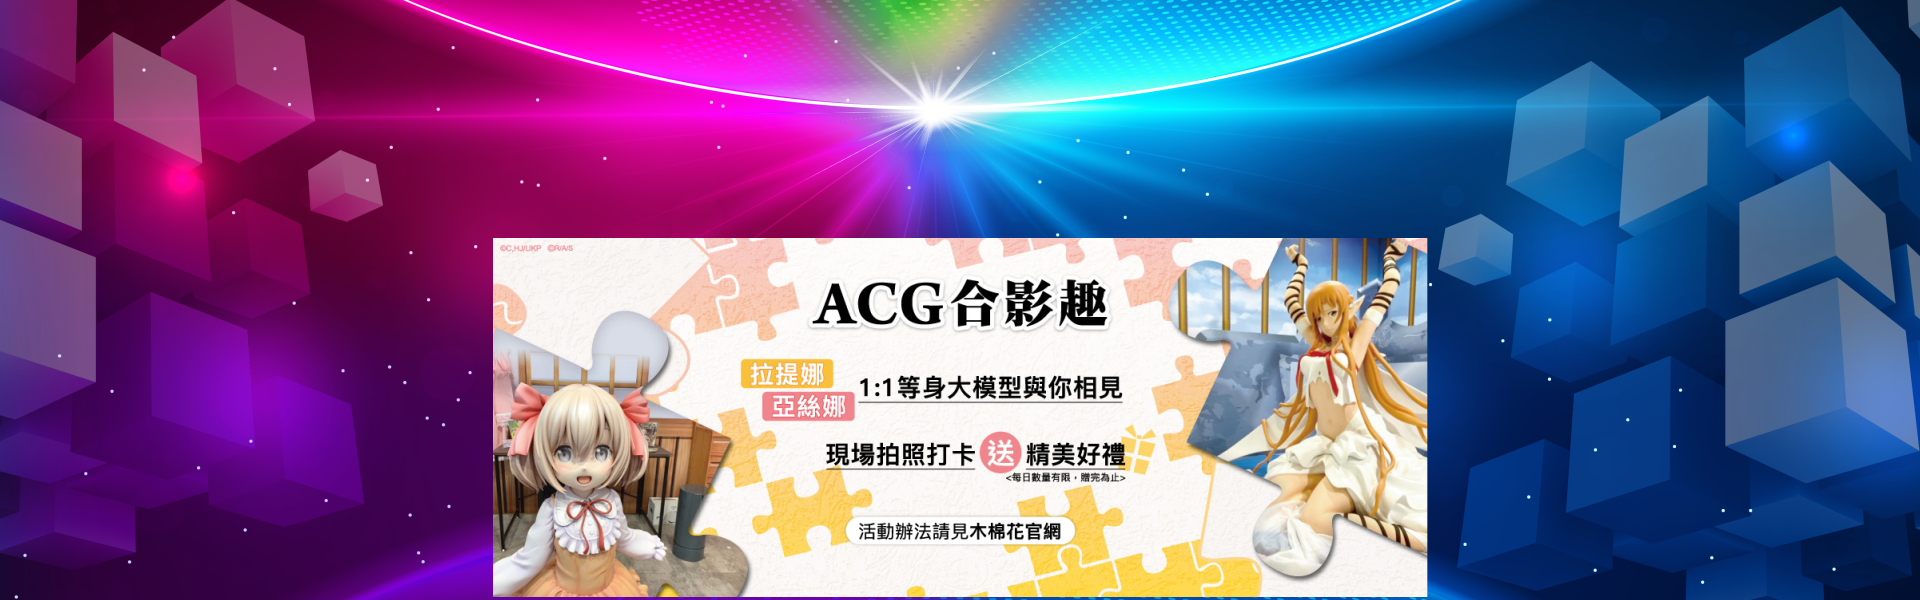 台北國際ACG博覽會-活動專區